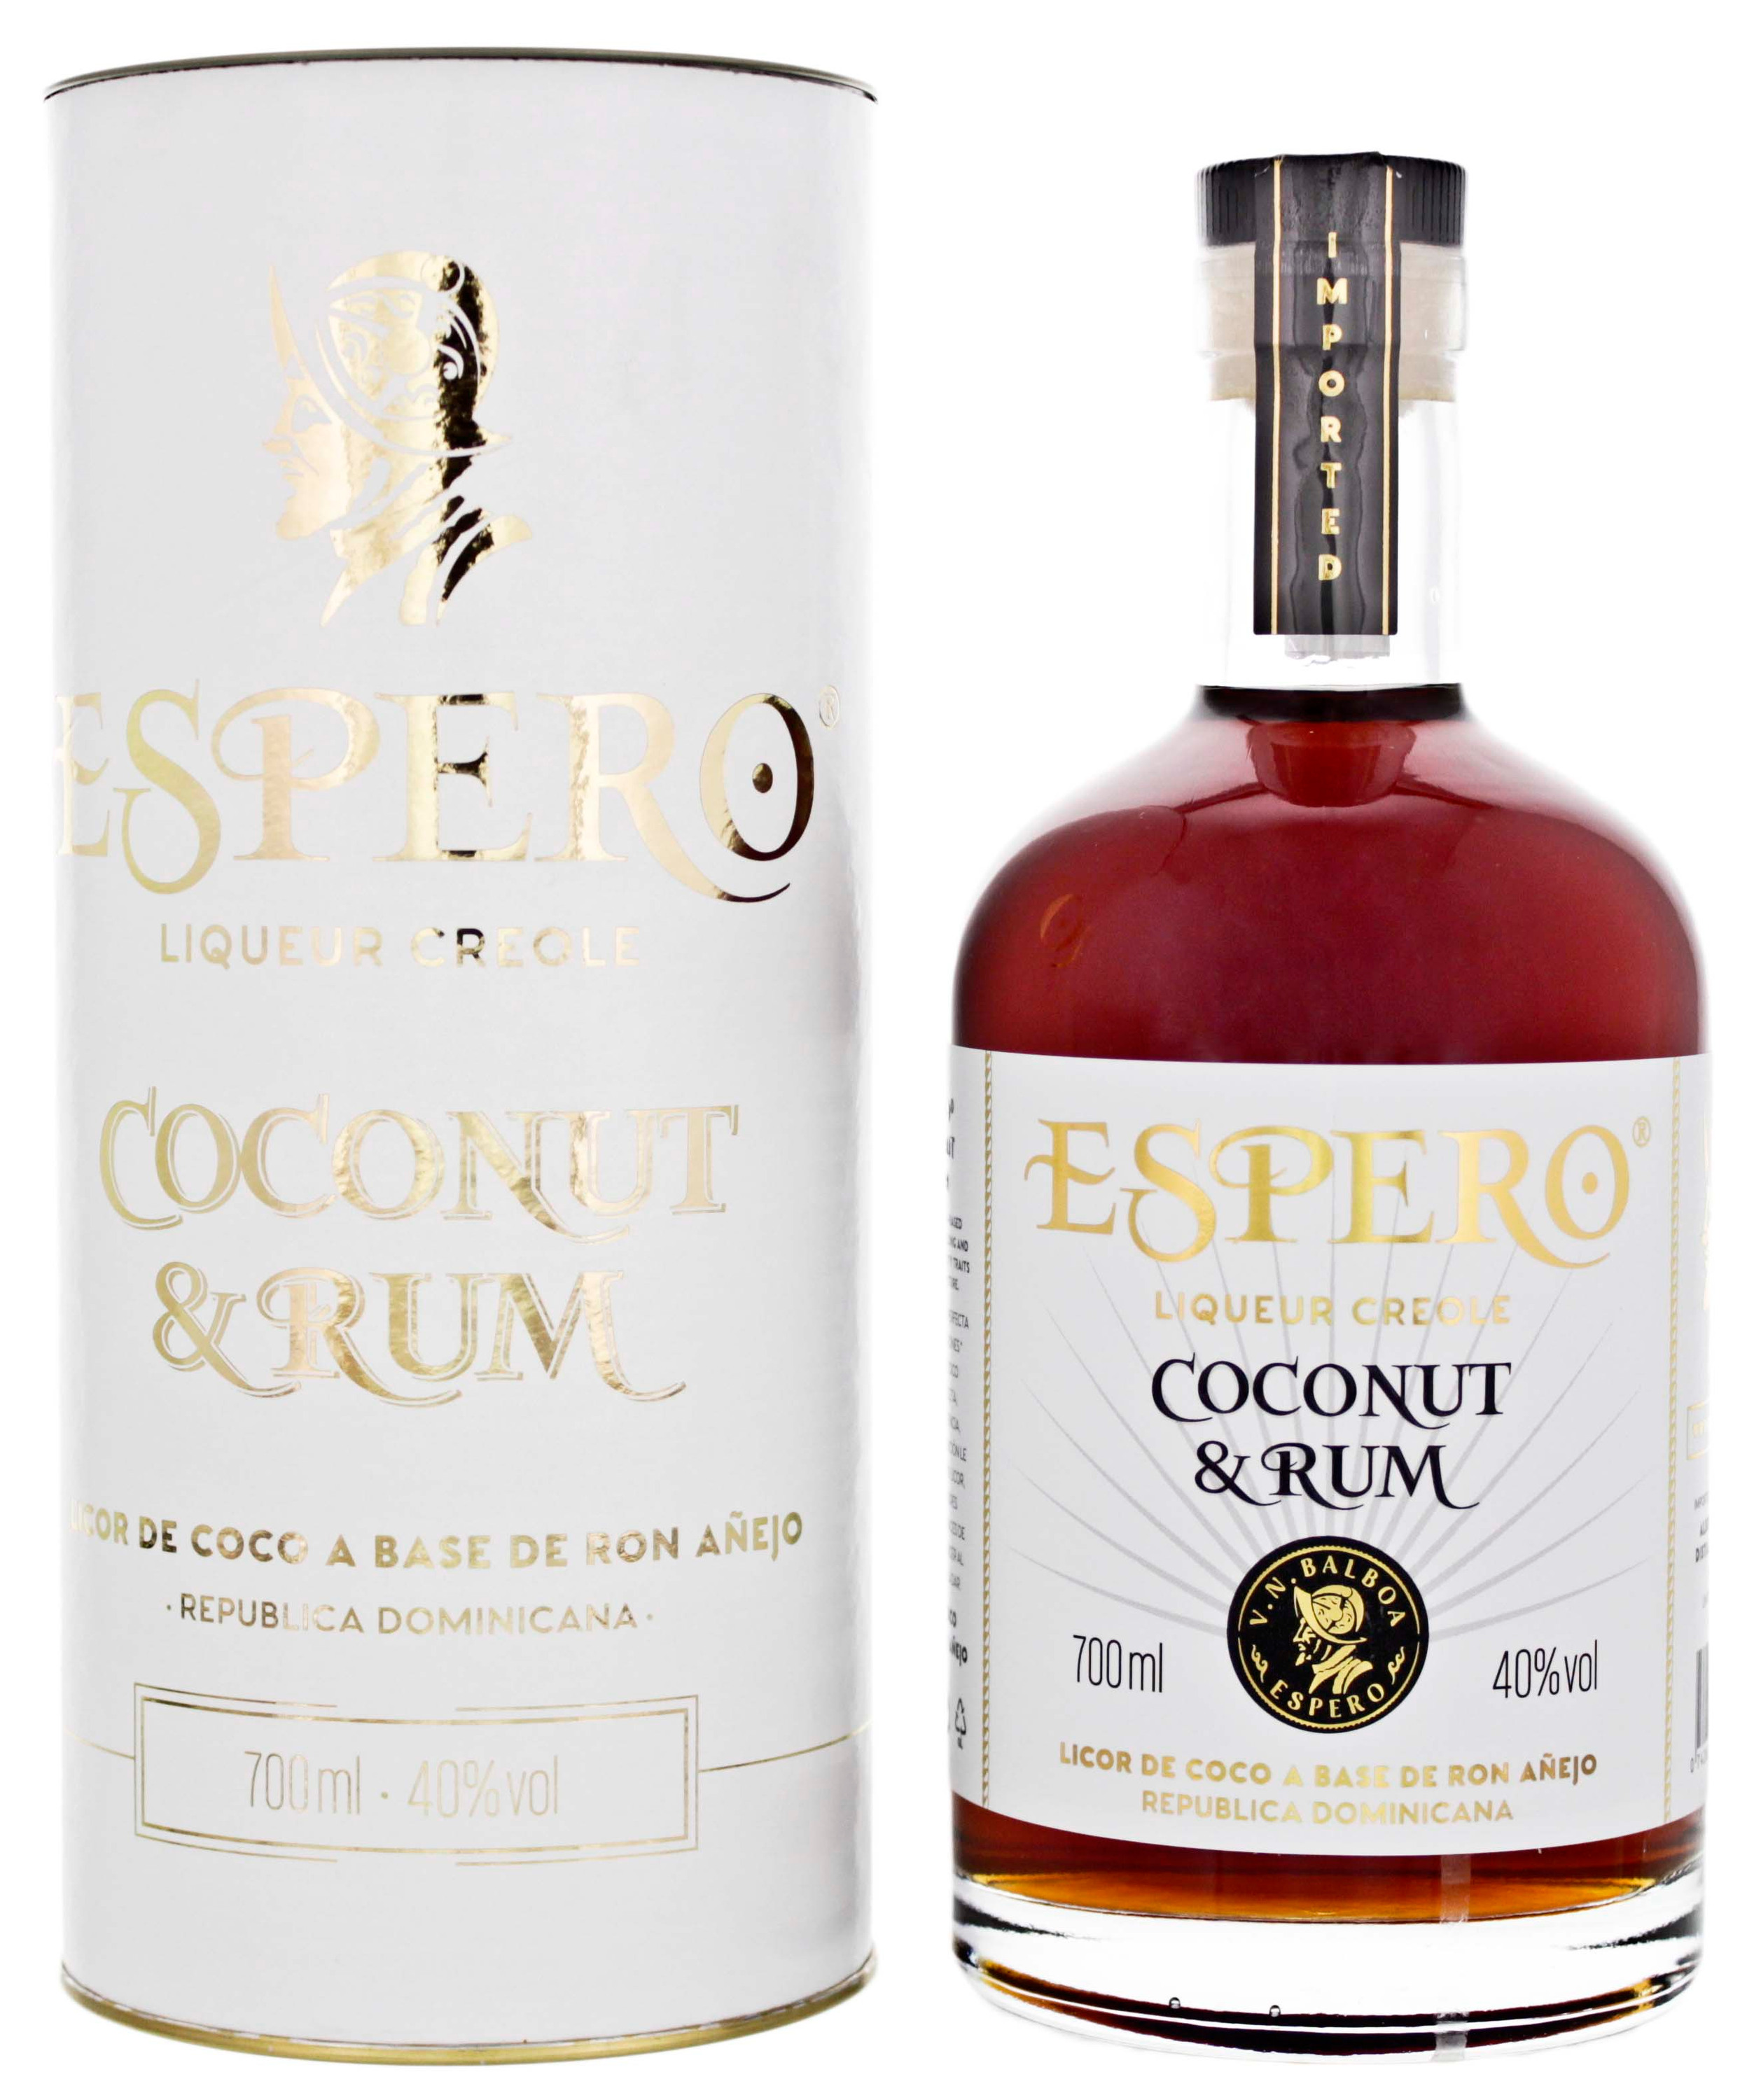 40% Ron Espero Liqueur Creole & Rum Coconut